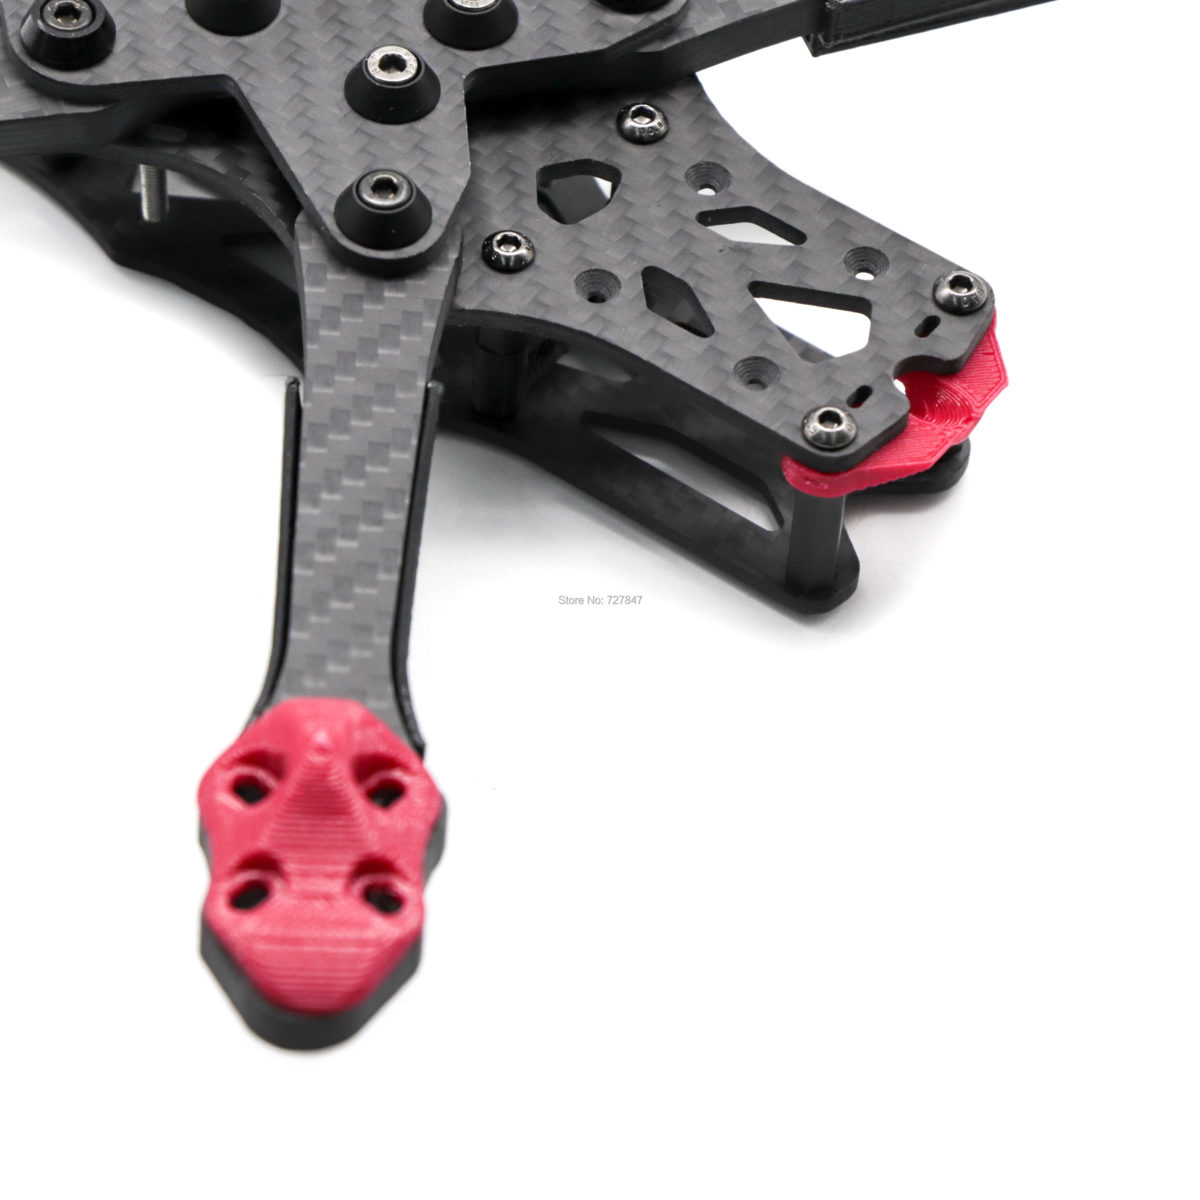 APEX in Carbon Fiber Frame Kit - FPV Racing Drone